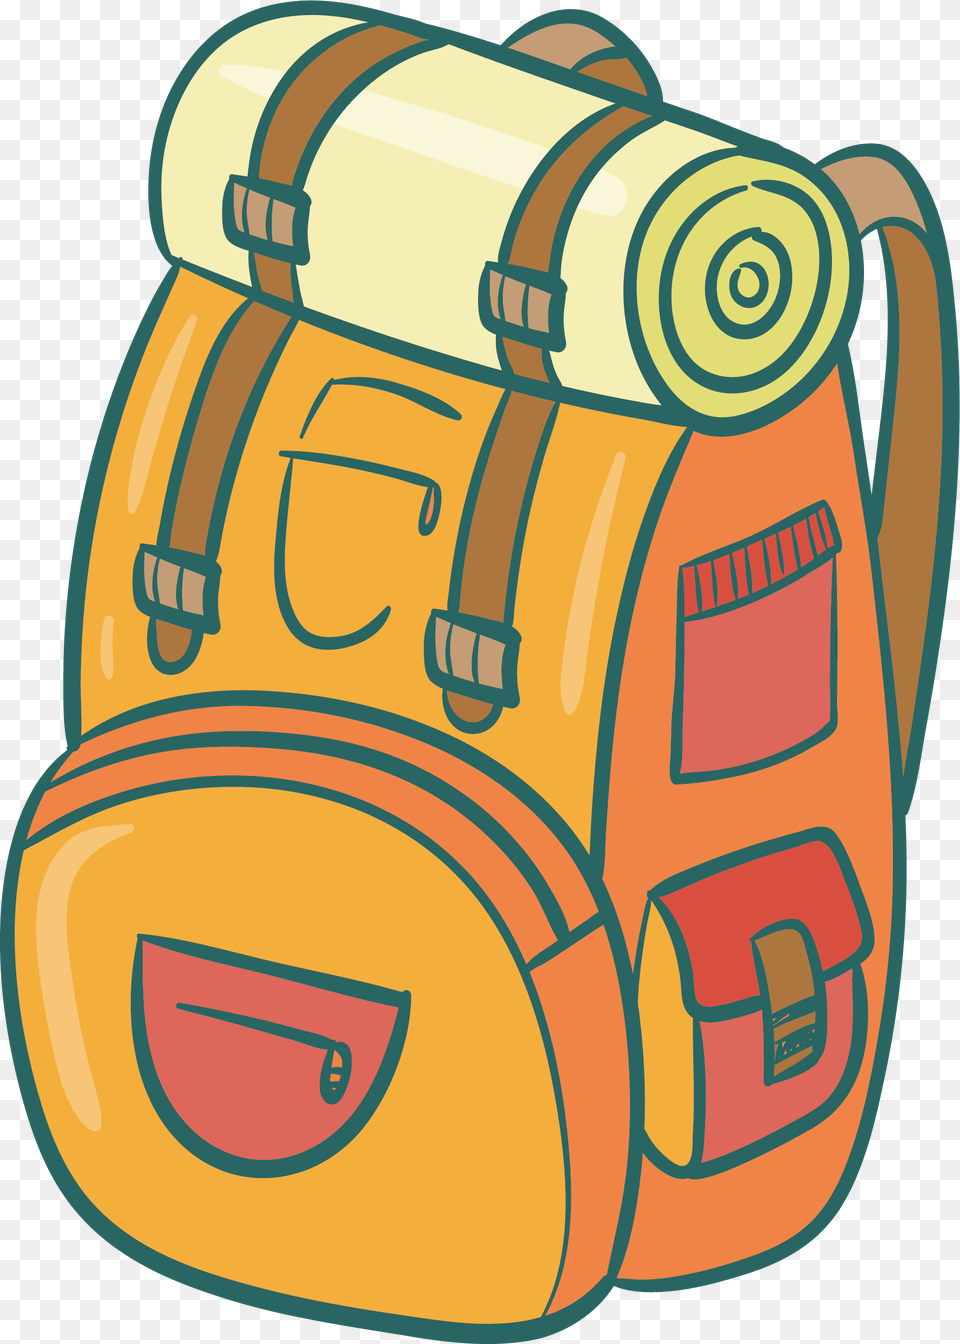 Clipart Backpack Blue Bag Clipart Backpack Blue Bag Backpack Bag Clip Art, Ammunition, Grenade, Weapon Free Png Download